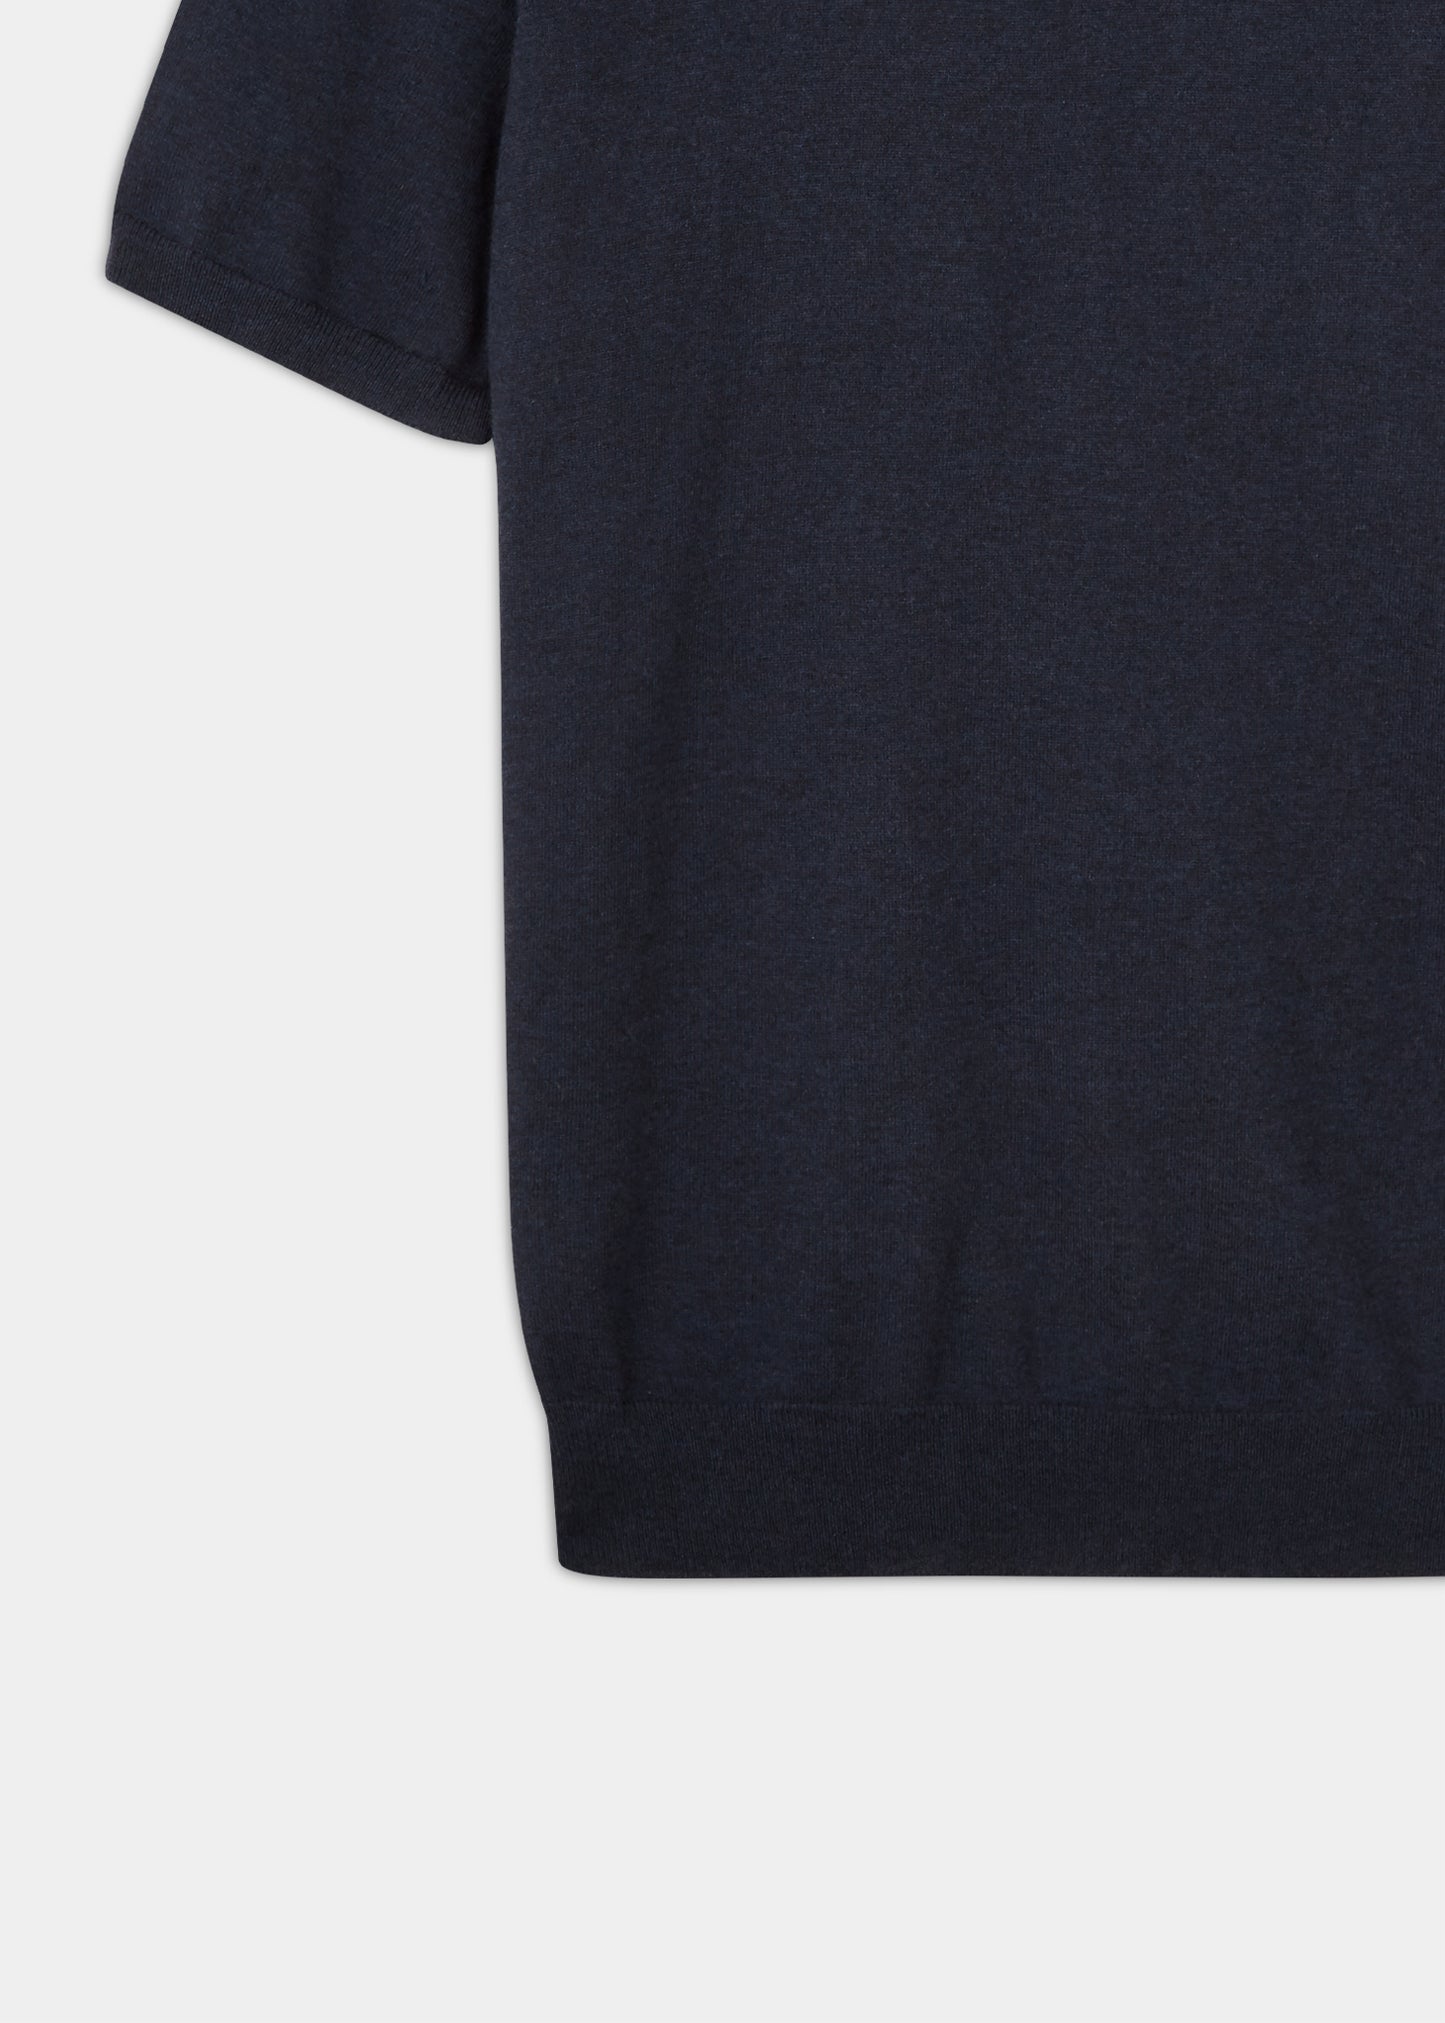 Men's luxury cotton t-shirt in dark navy